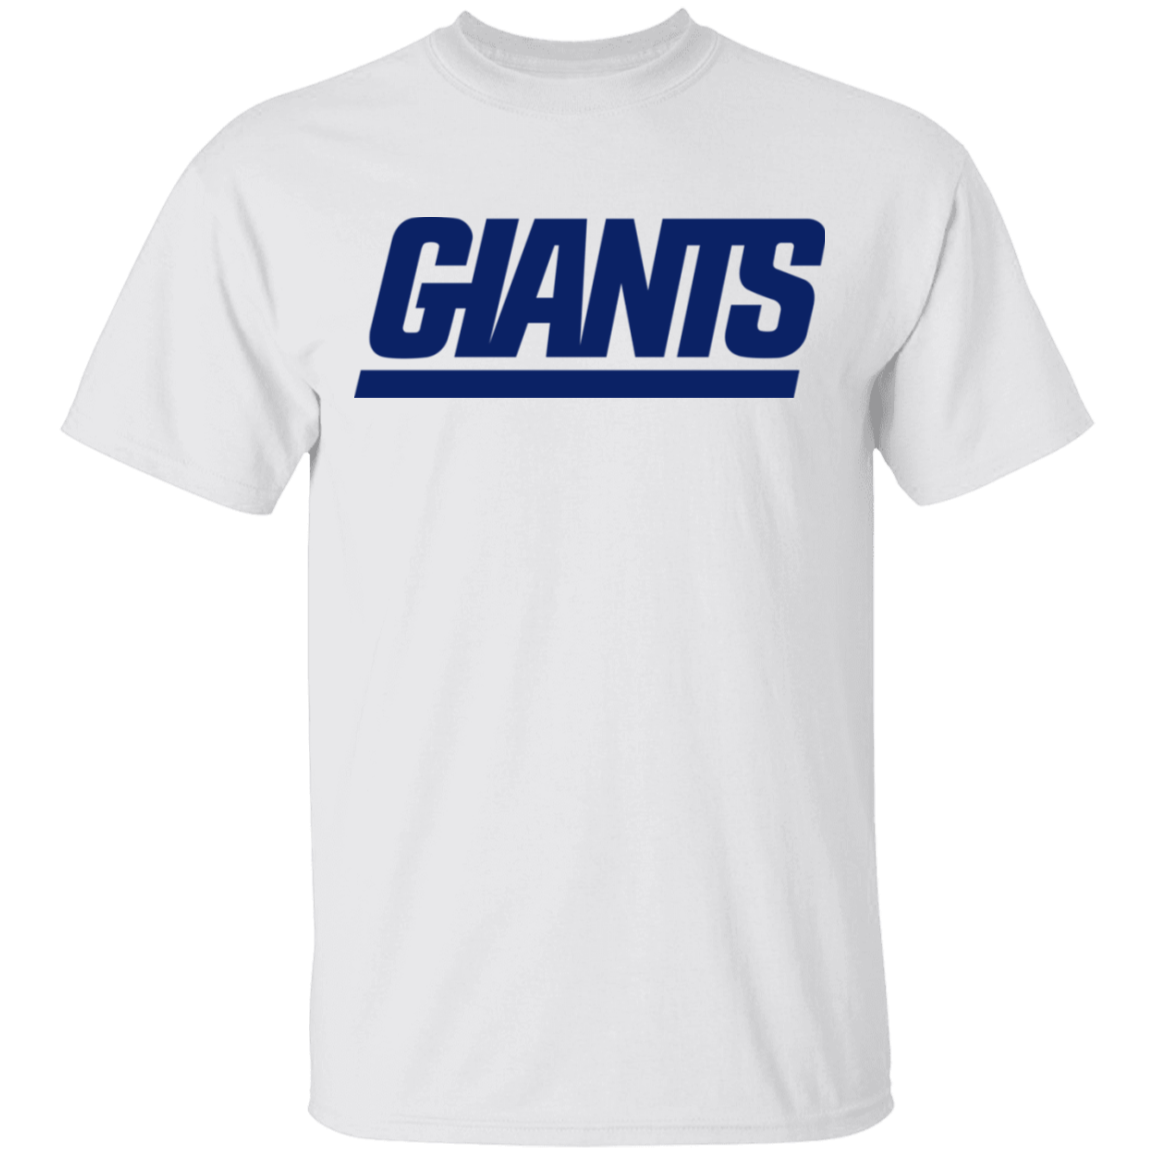 ny giants shirt